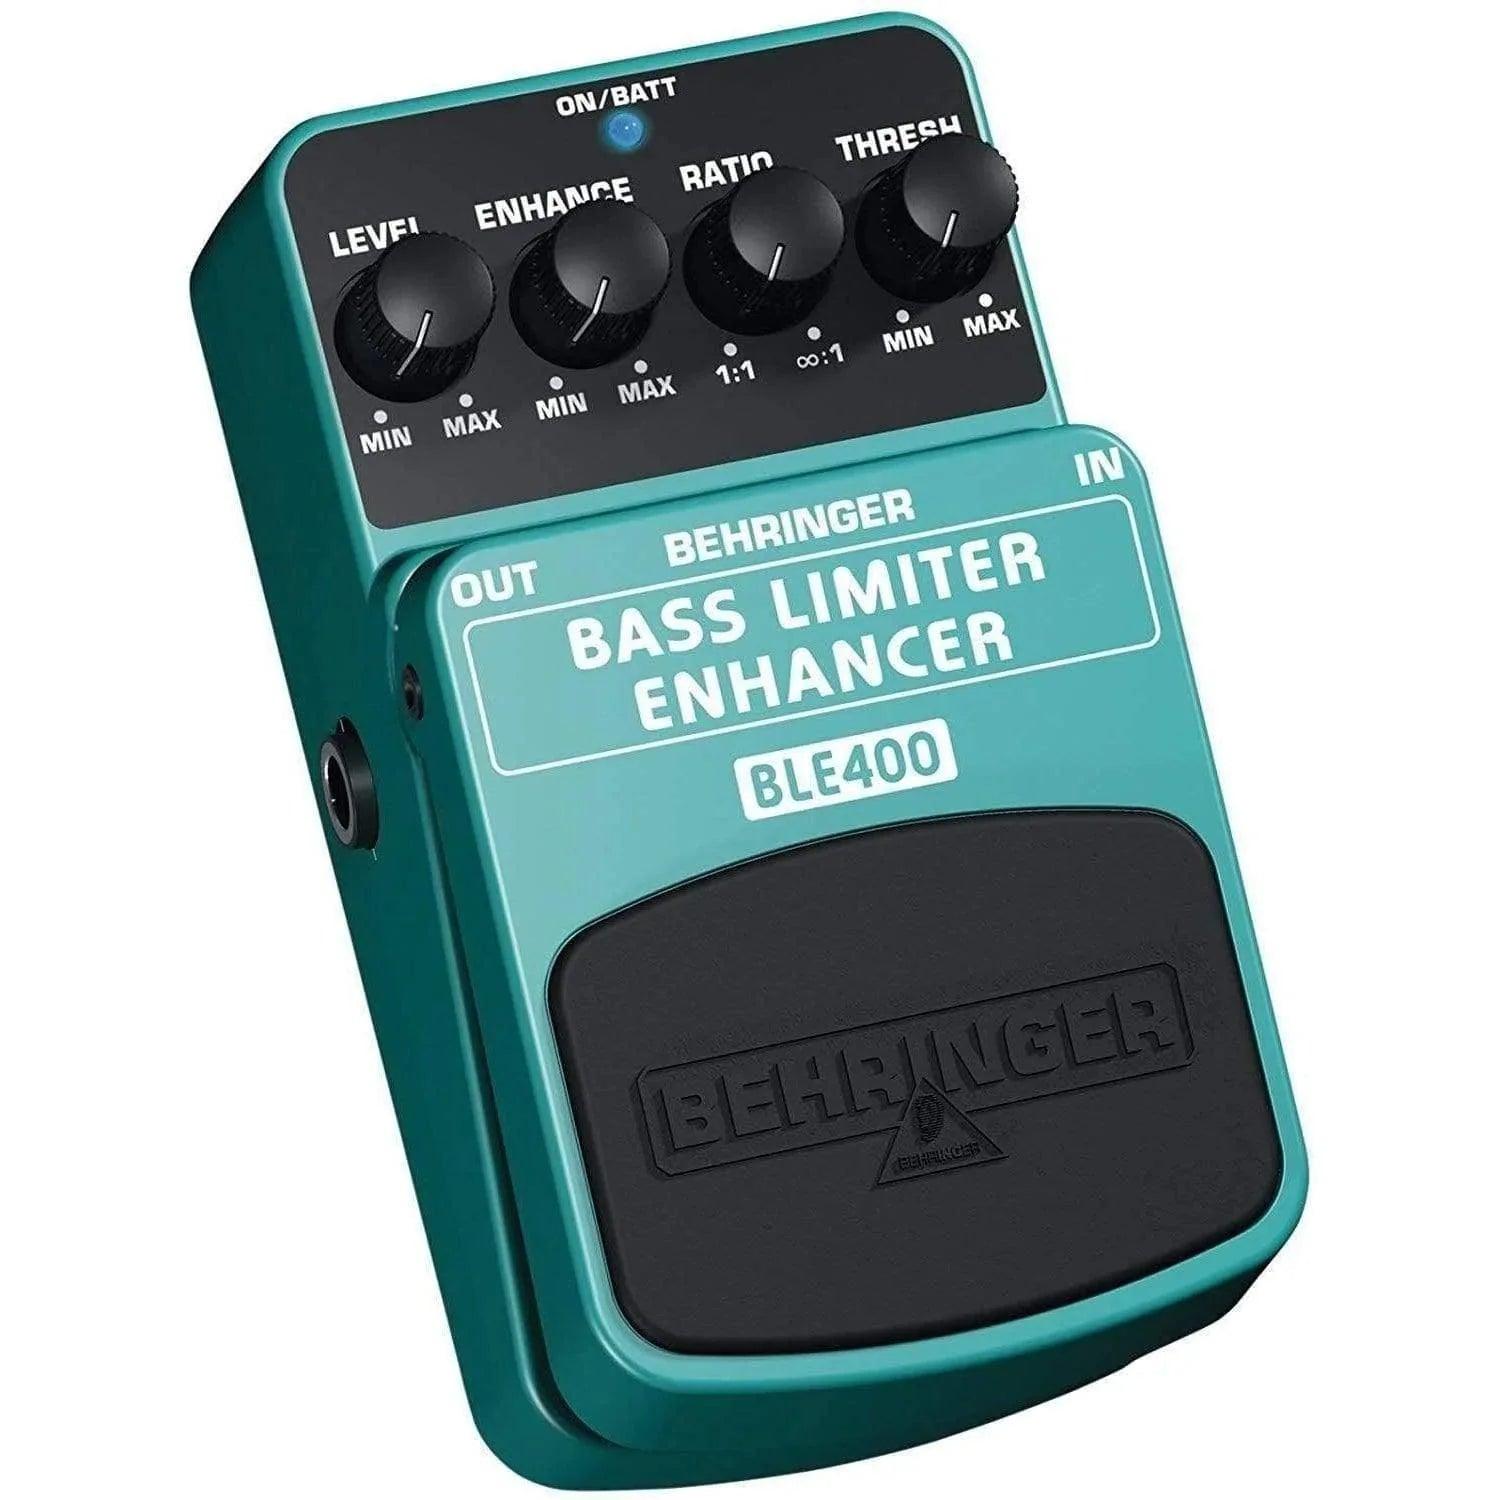 Behringer BLE400 Bass Limiter Enhancer